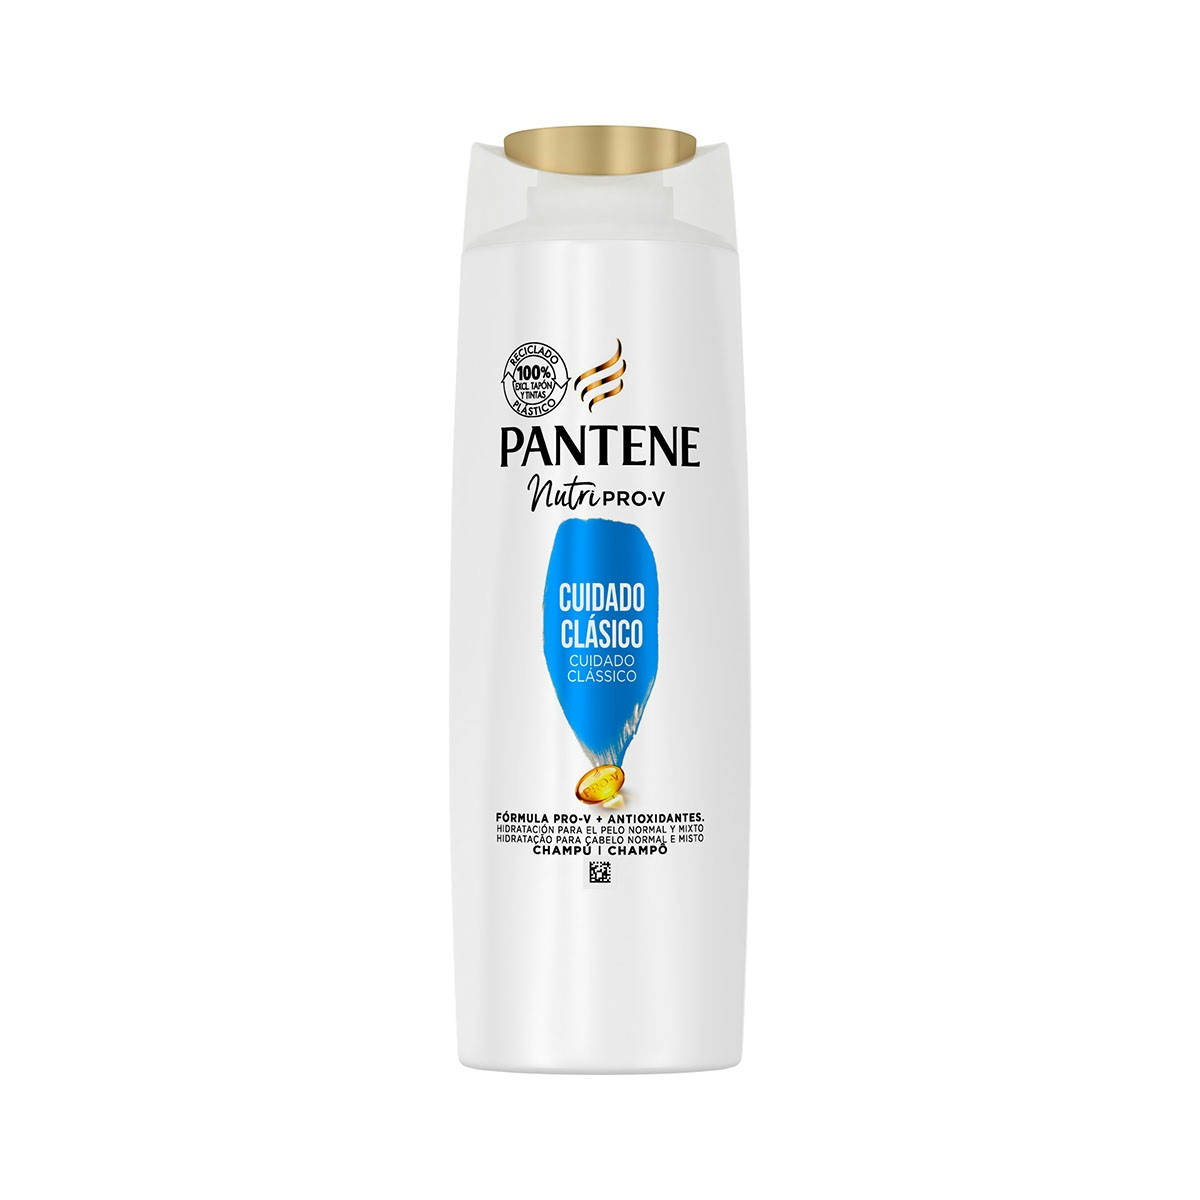 Pantene Champú Cuidado Clásico Nutri Pro-V con fórmula Pro-V + antioxidantes, para cabello normal y mixto, 340ML